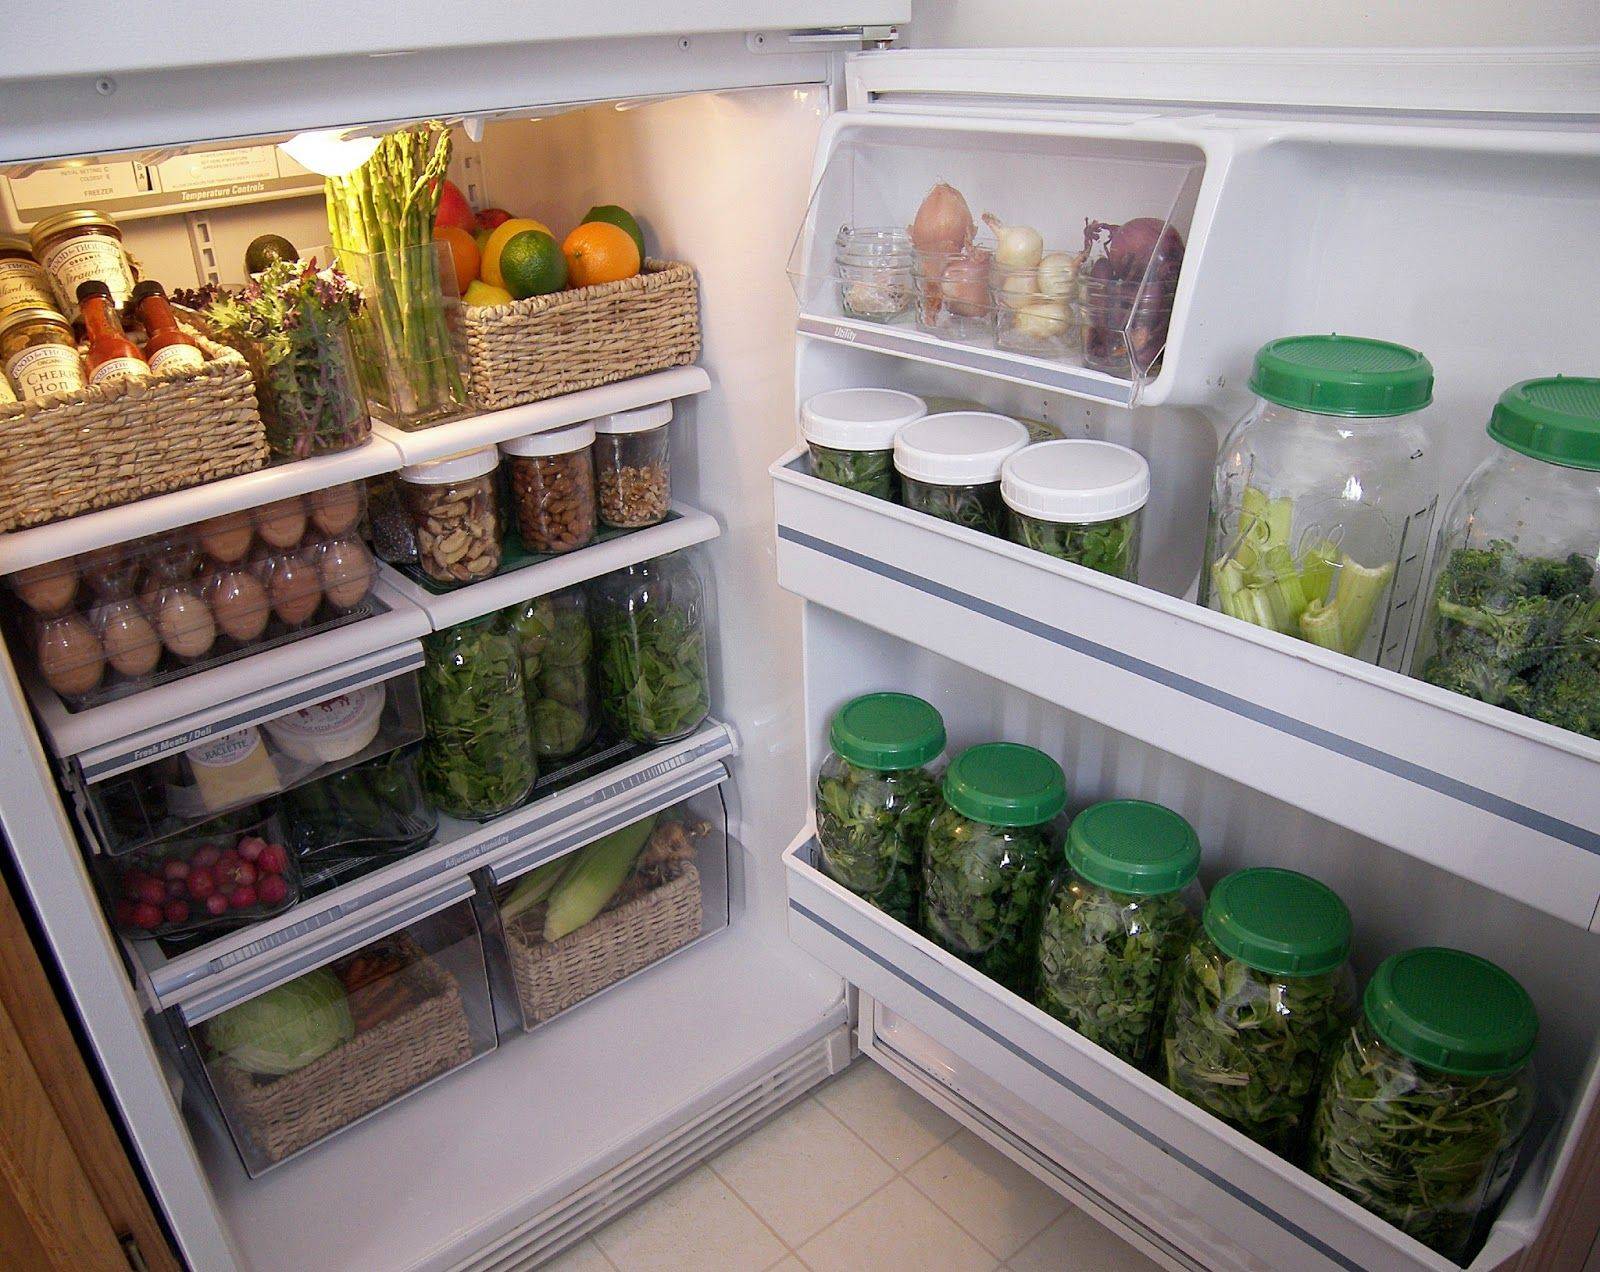 Сроки хранения в холодильнике готовой еды